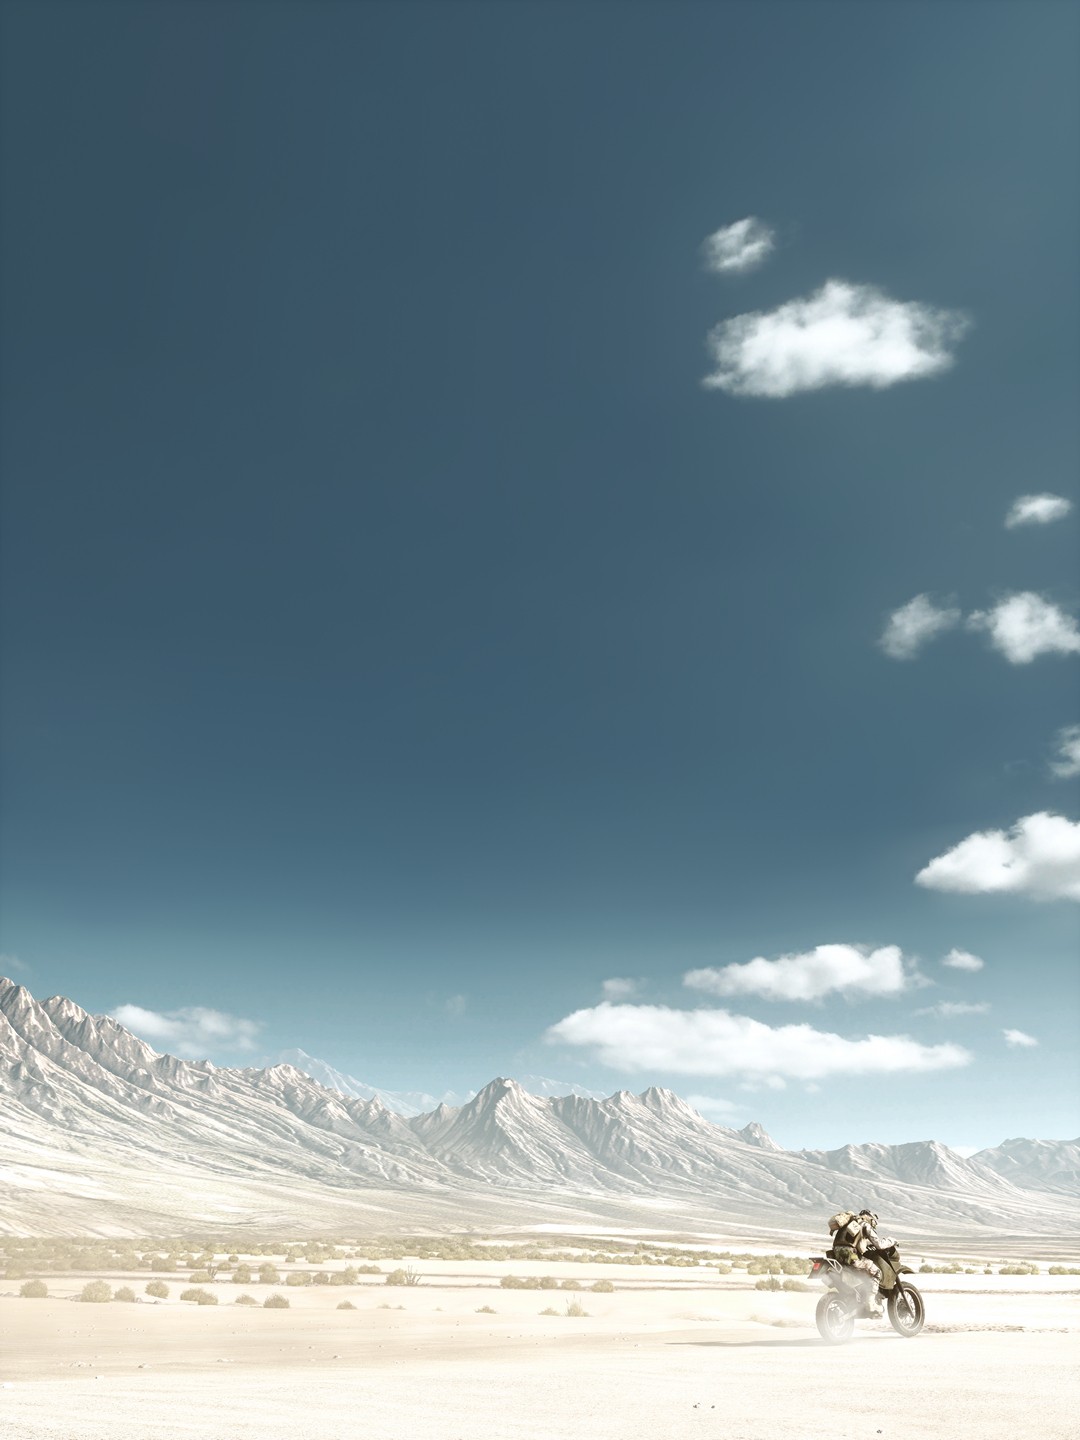 《战地3》发售将近十年 DICE截图大师分享最近美照